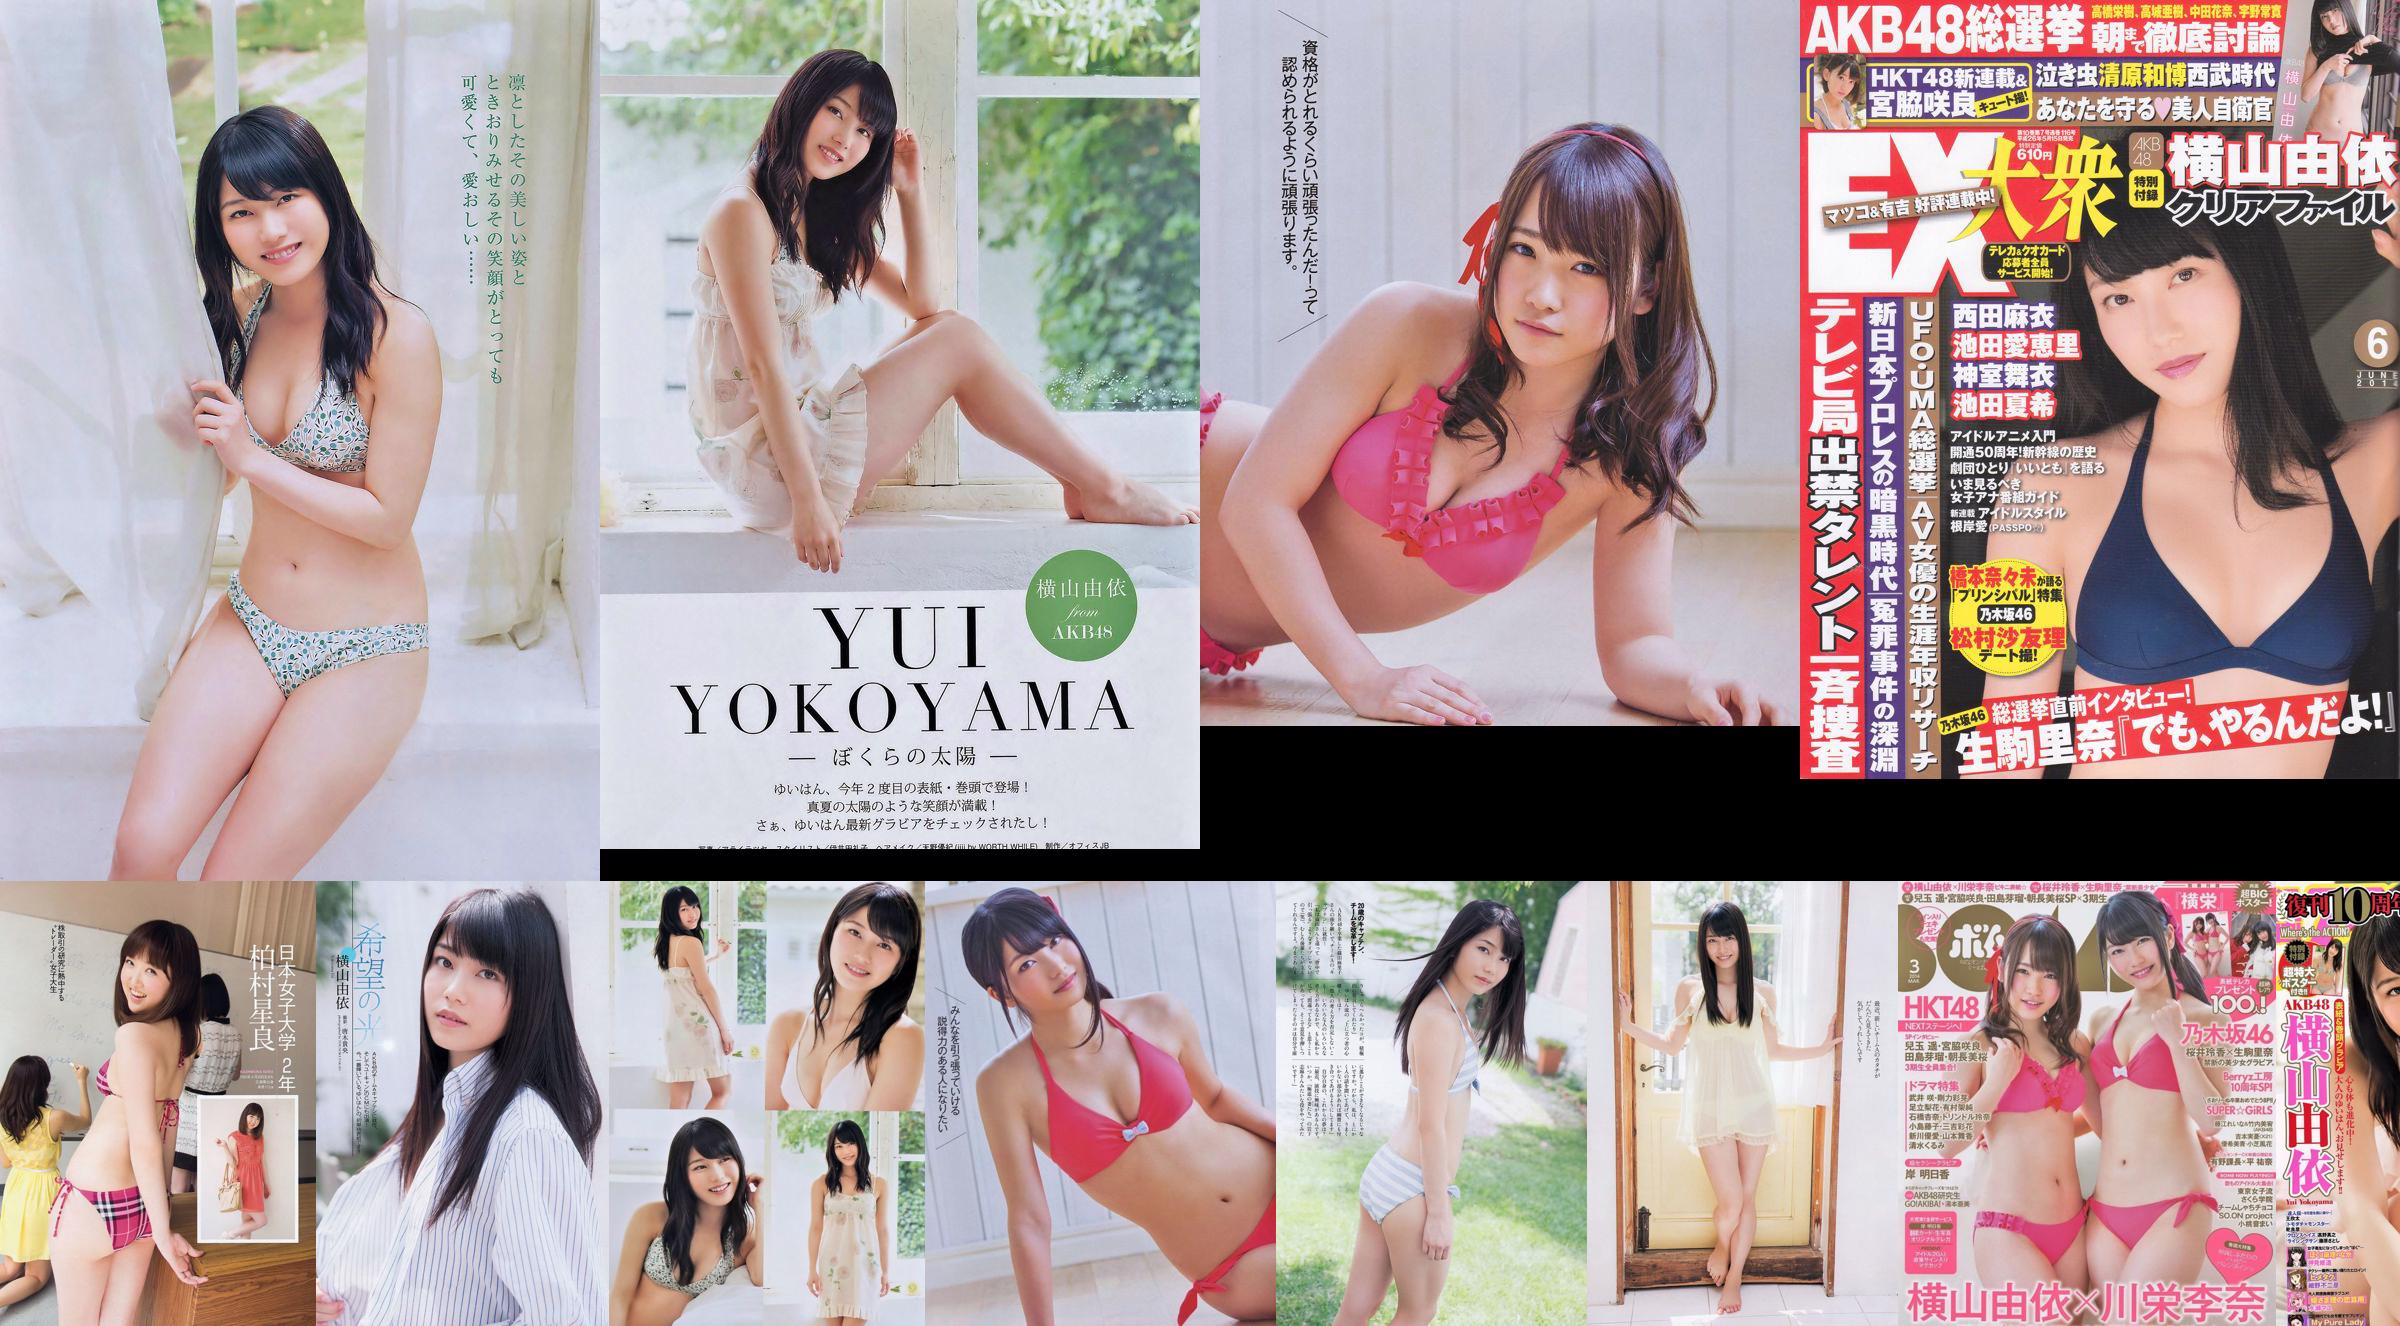 [EX Taishu] Yokoyama Yui, Miyawaki Sakura, Matsumura Sa Yuri 2014 No.06 Photo Magazine No.1937c5 Page 25